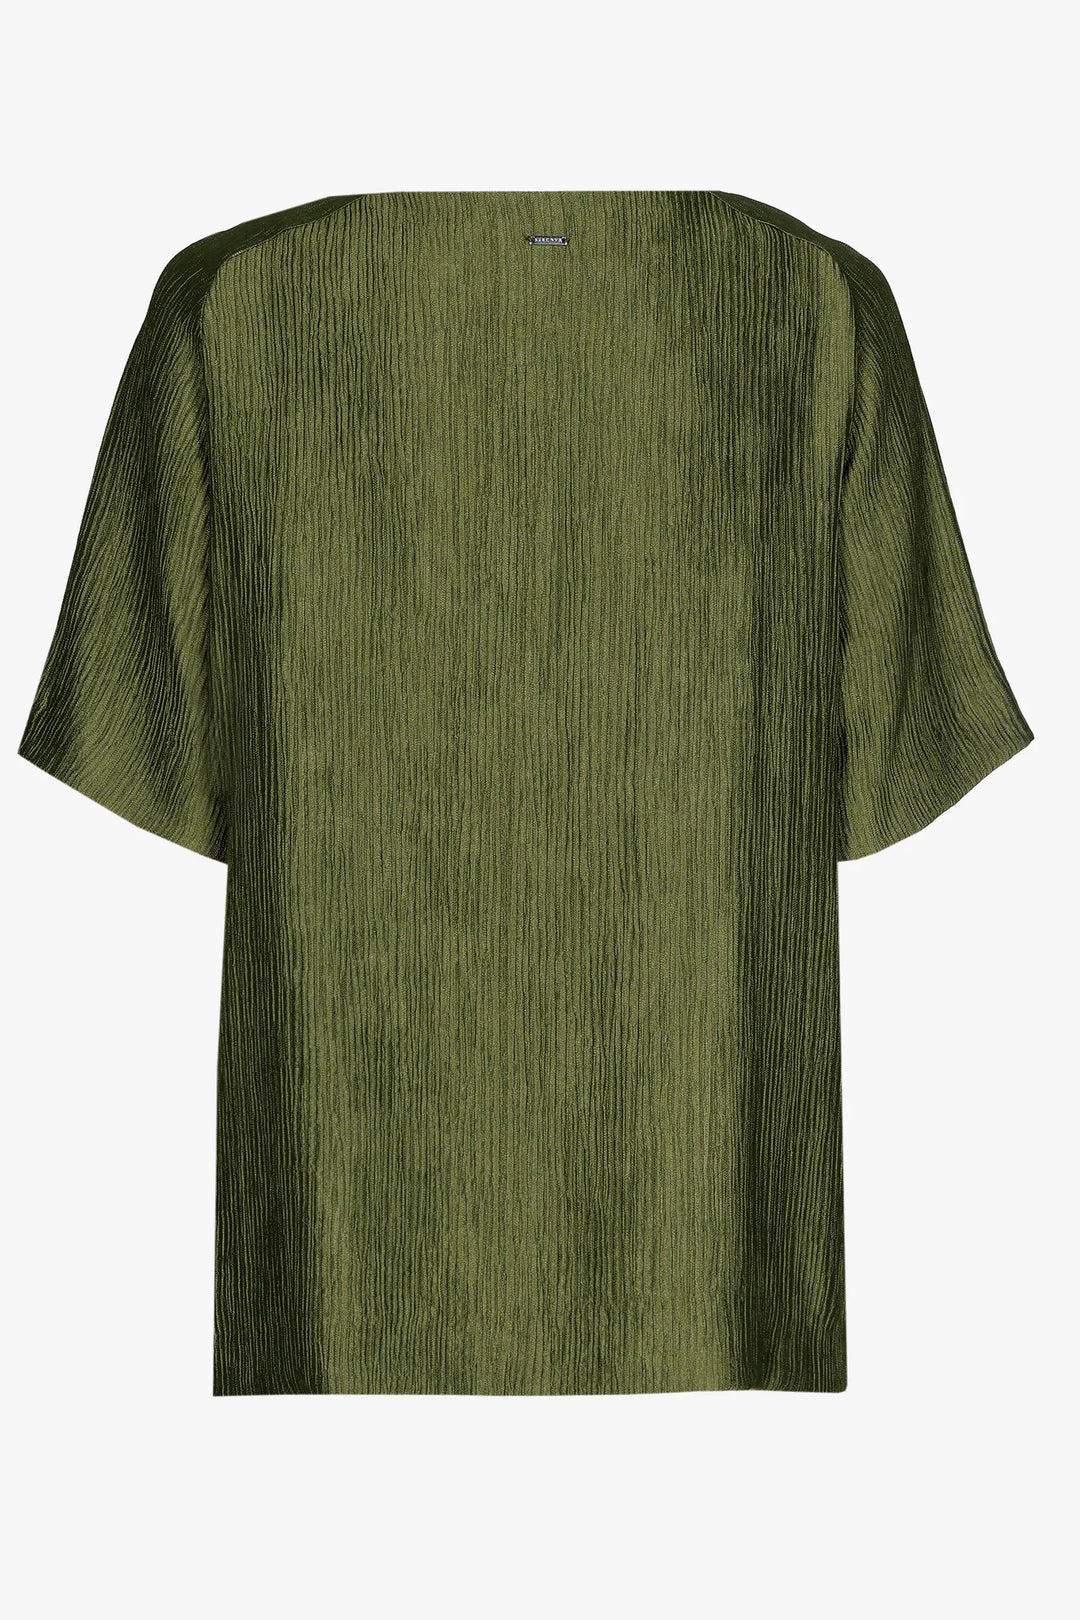 kaki blouse met satijnlook - xandres - - grote maten - dameskleding - kledingwinkel - herent - leuven